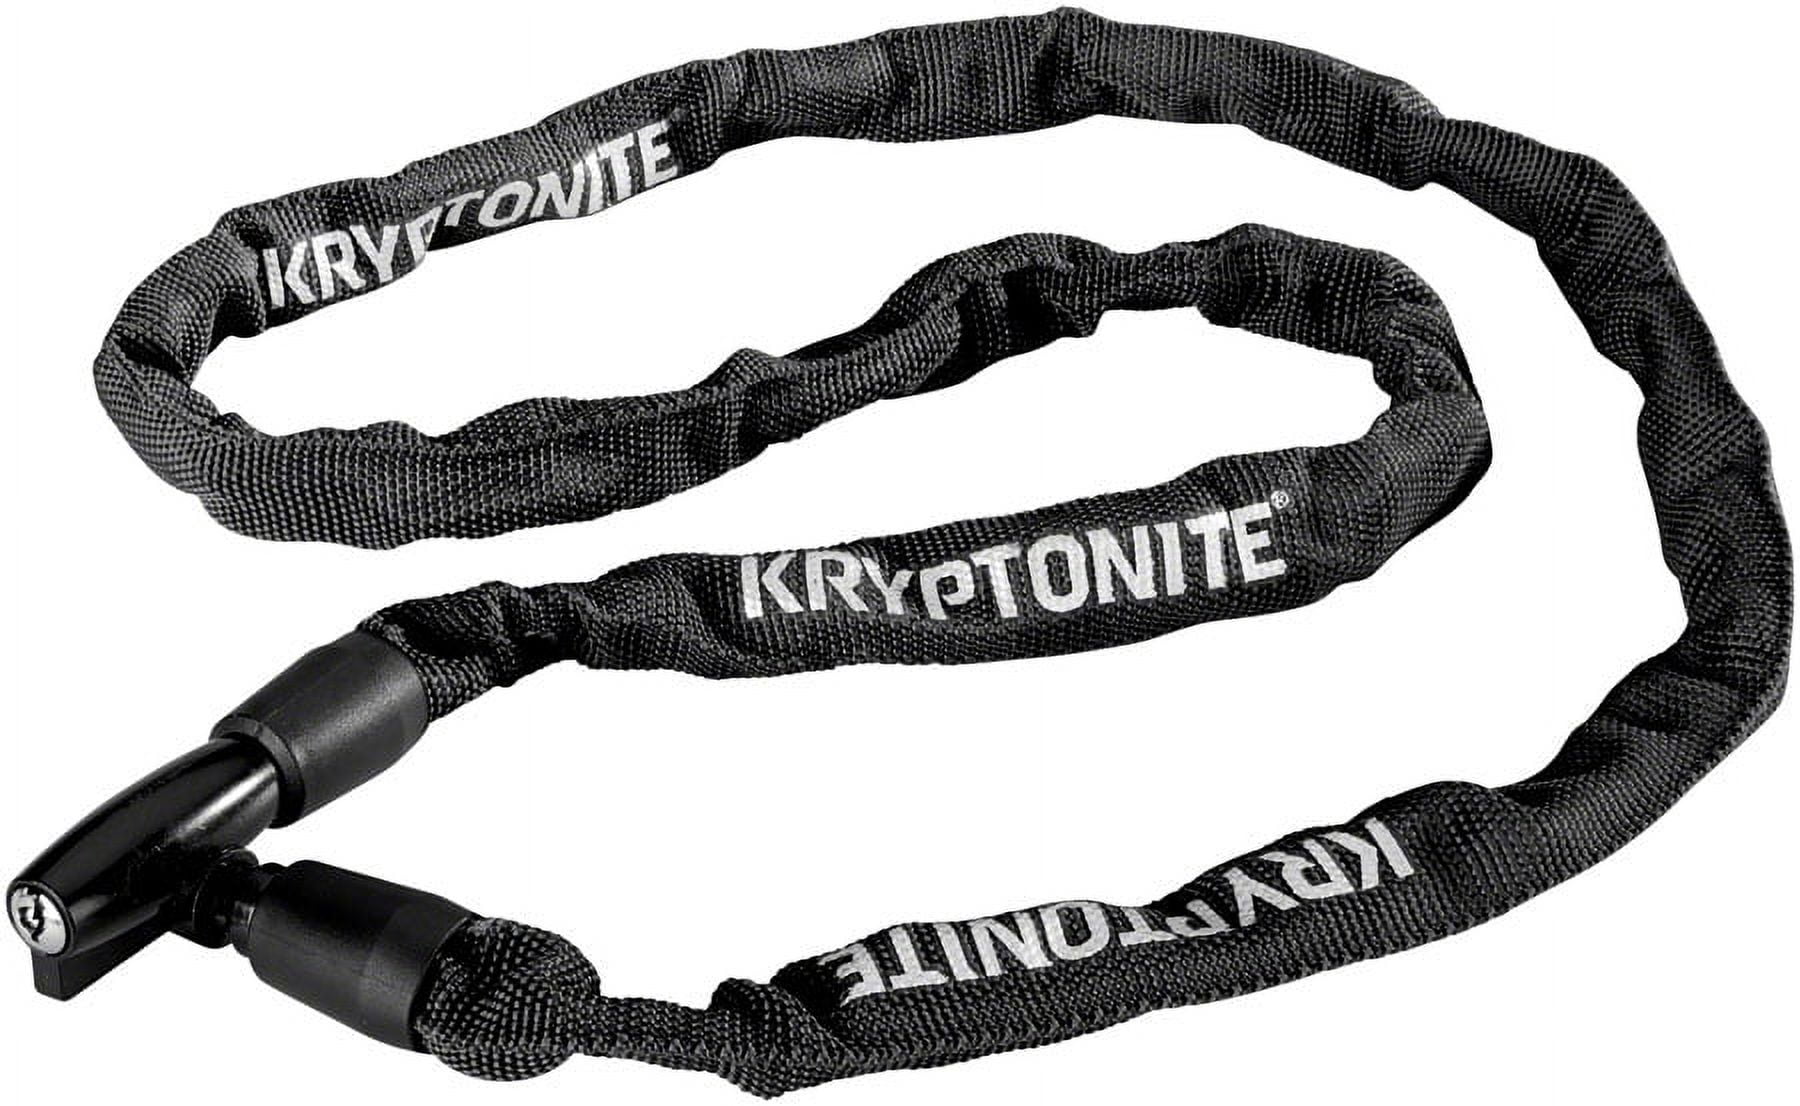 Kryptonite Keeper 411 Chain Lock w/ Key (Black) (4 x 110cm) - Dan's Comp